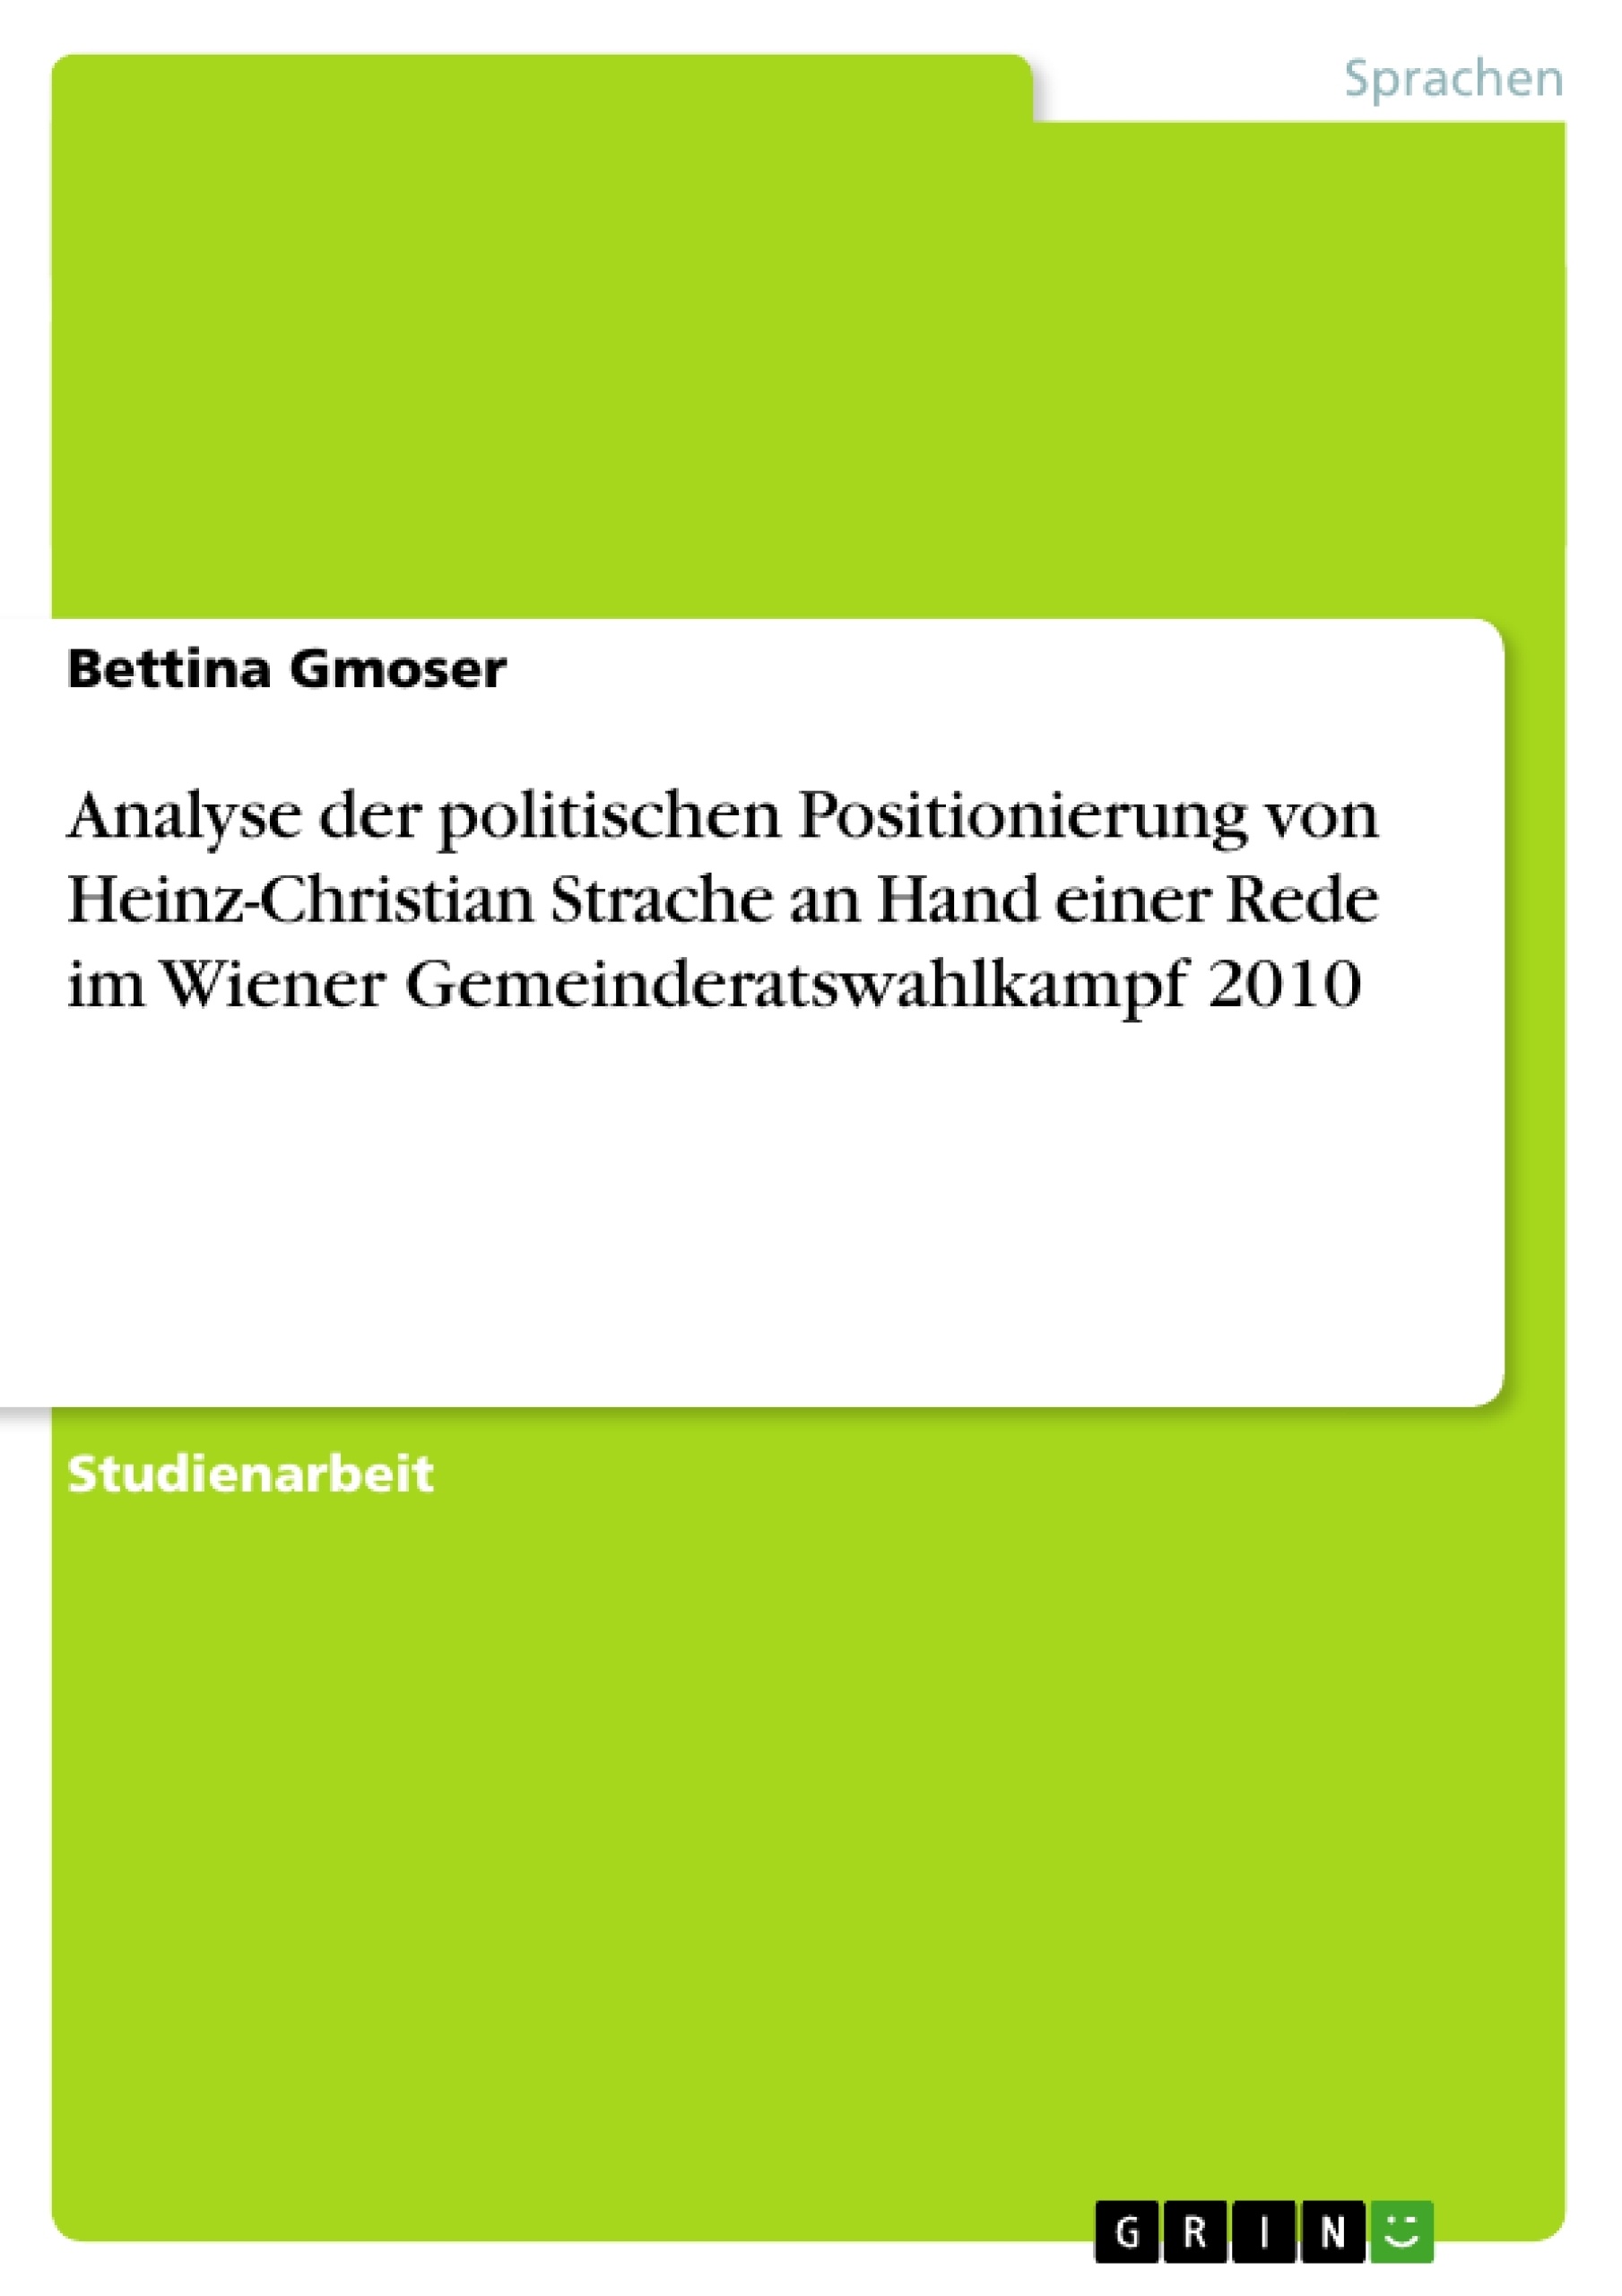 Titel: Analyse der politischen Positionierung von Heinz-Christian Strache an Hand einer Rede im Wiener Gemeinderatswahlkampf 2010